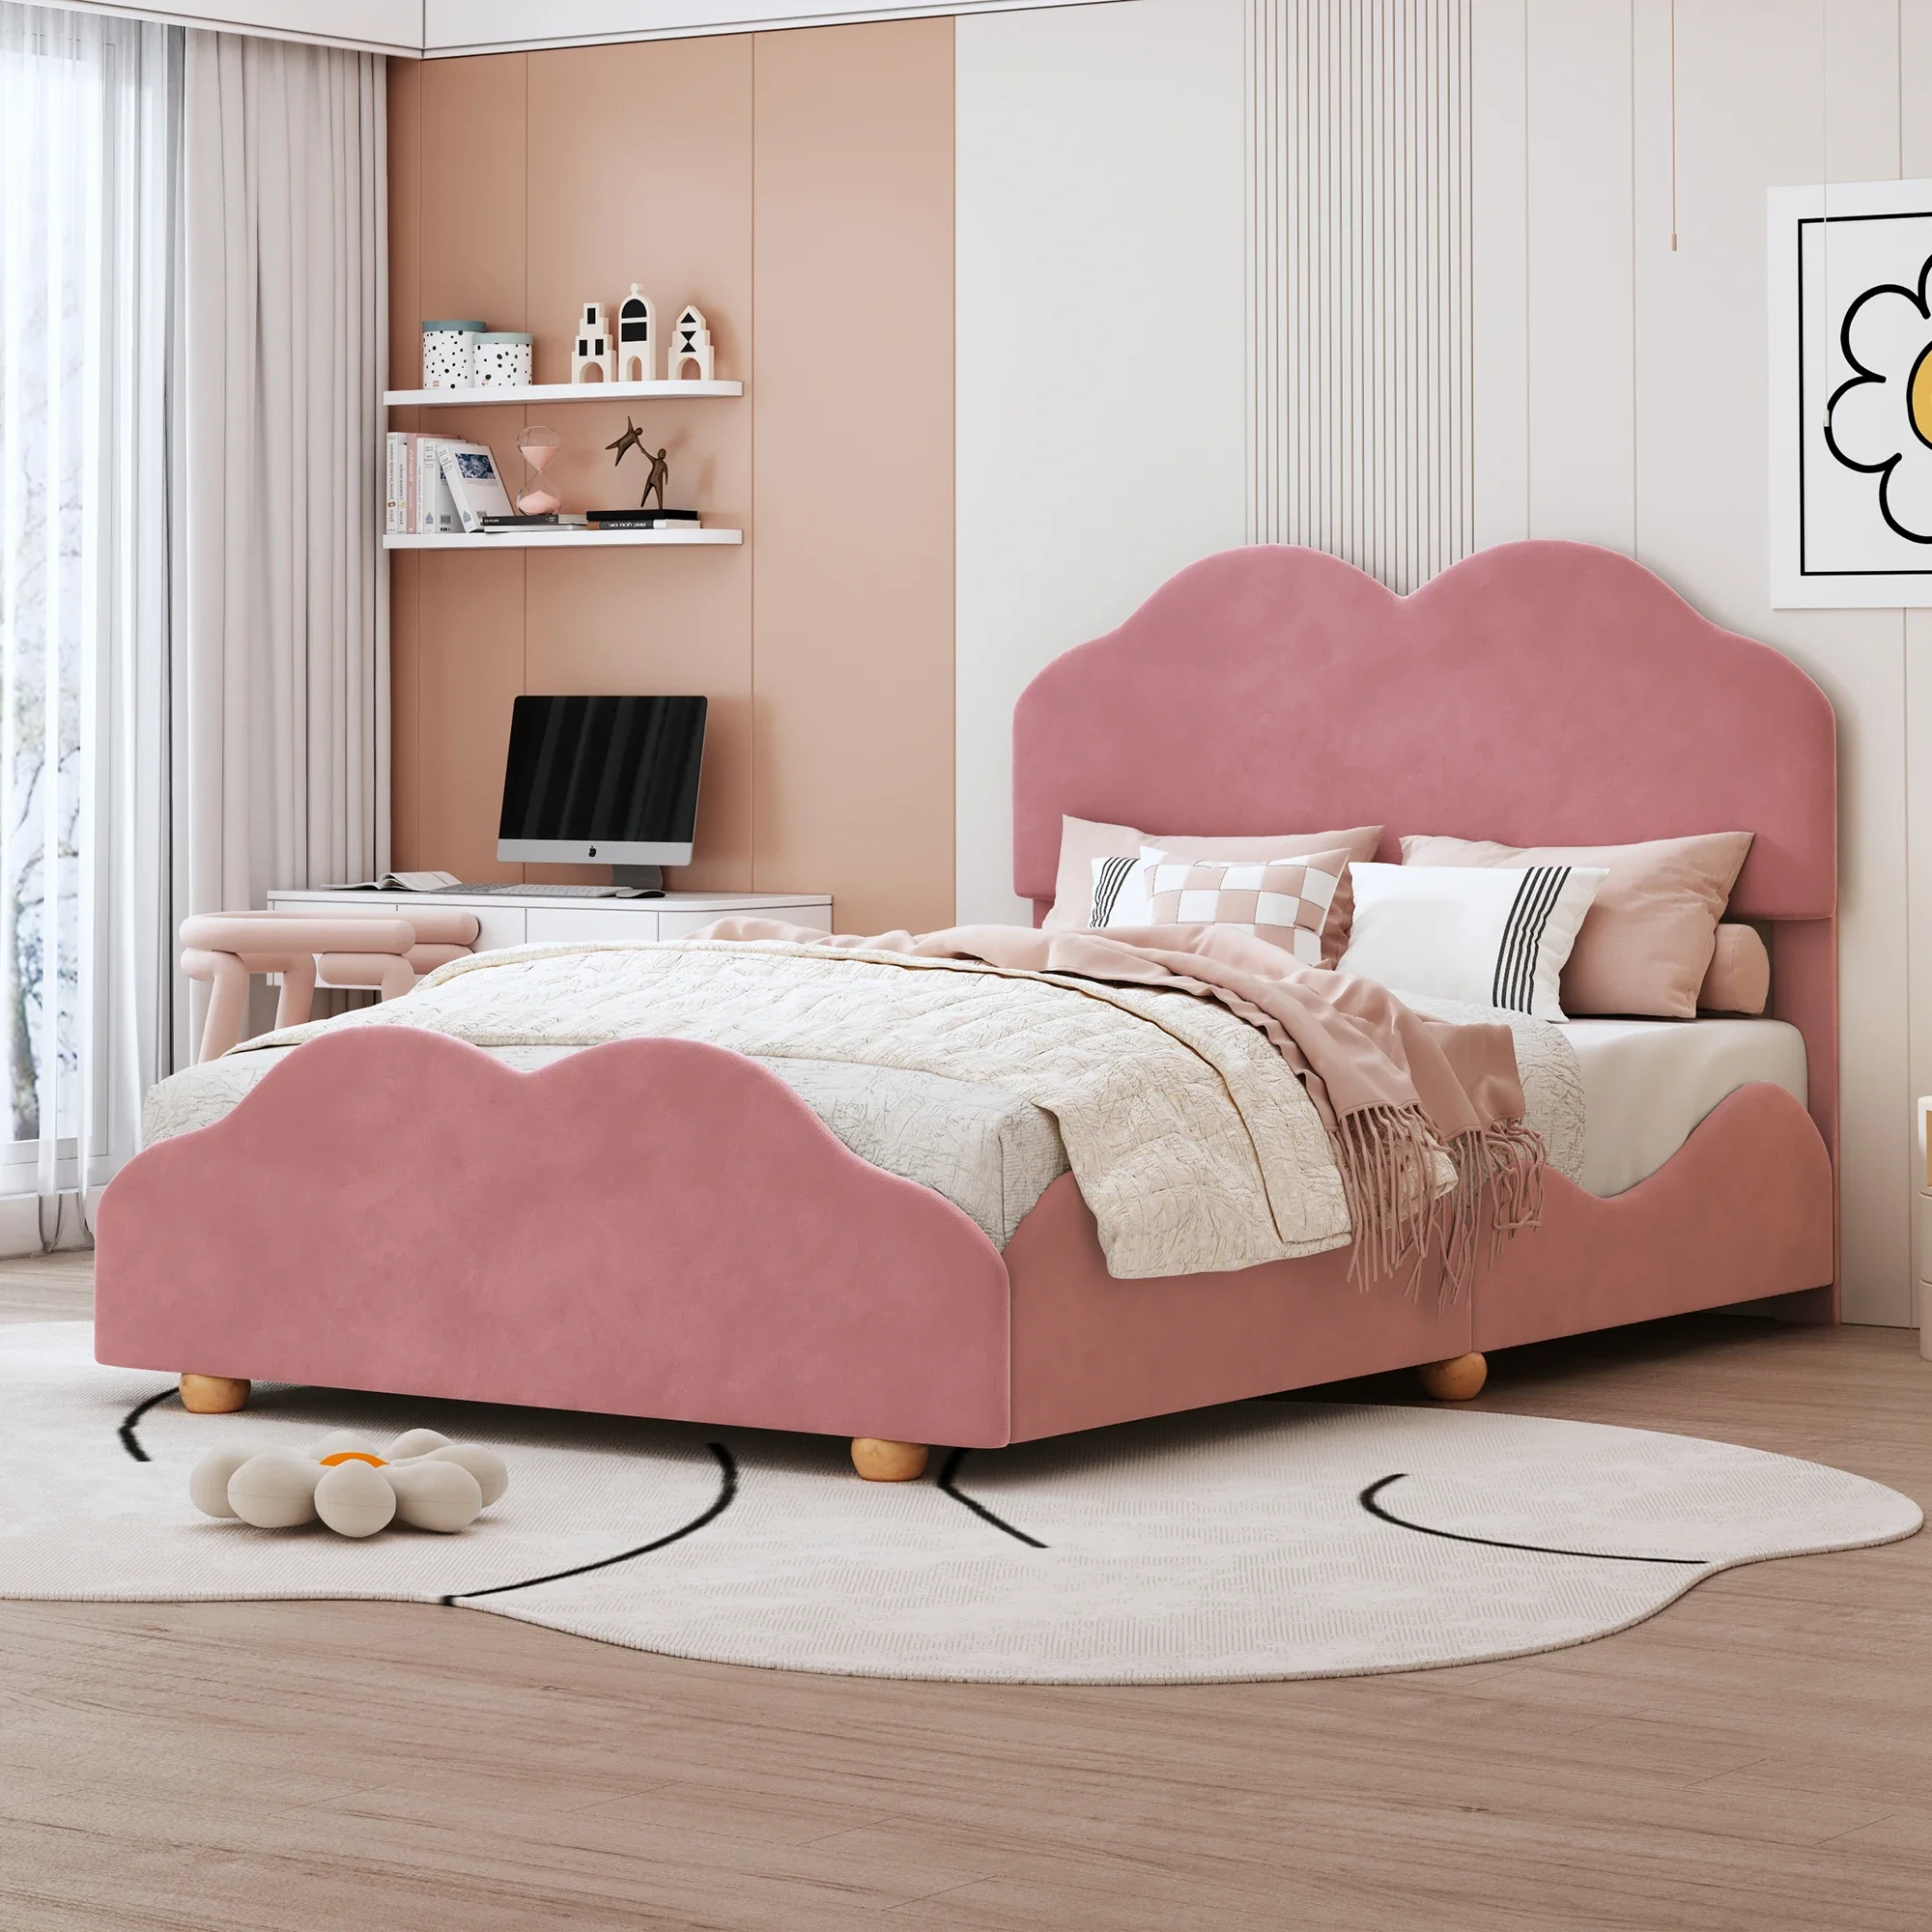 Полноразмерная обитая кровать-платформа с доской в форме облака, темно-розовый